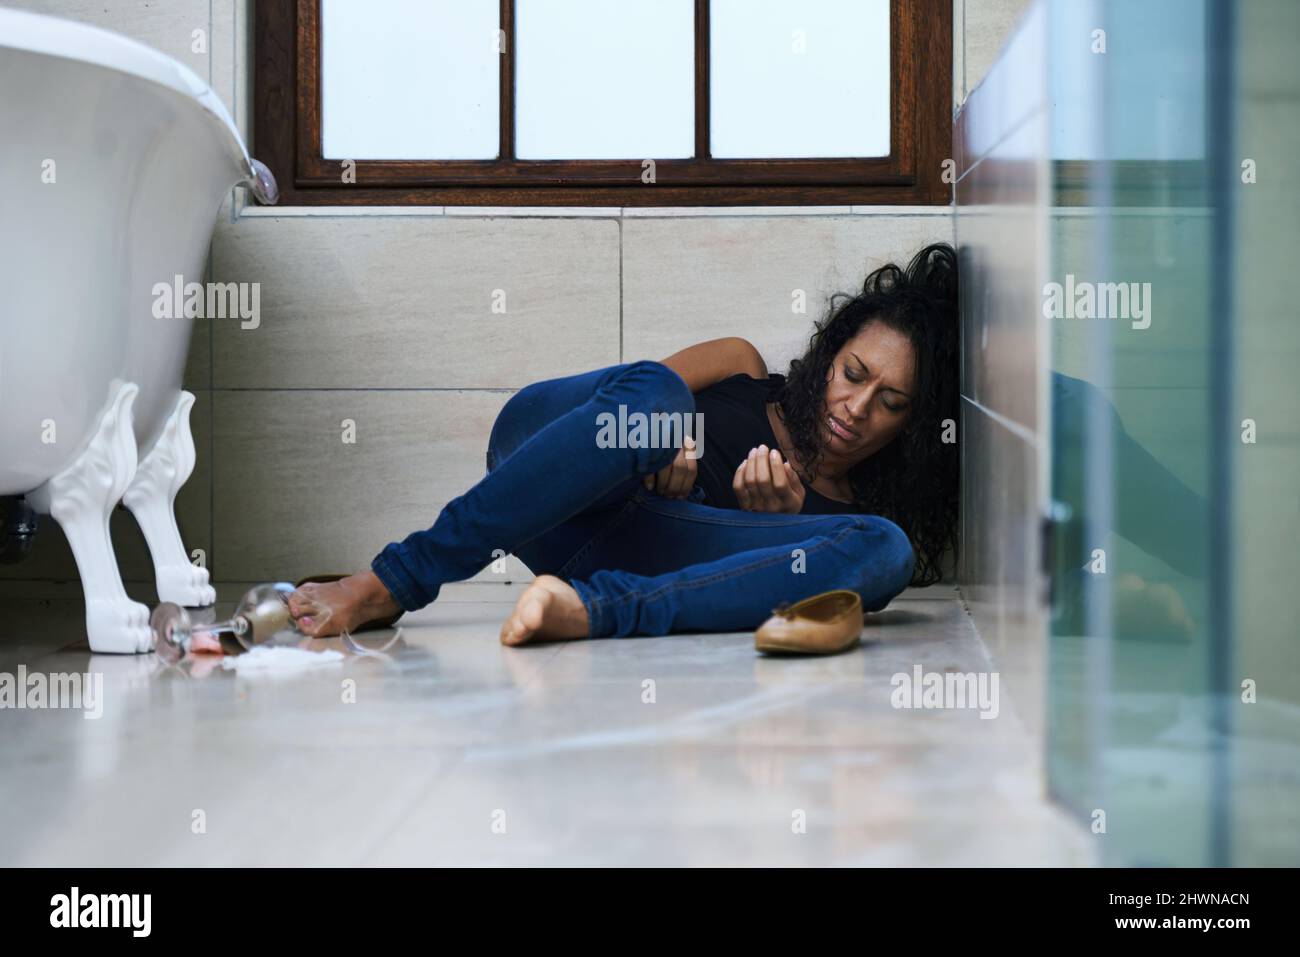 Dépendant des médicaments. Une photo d'un drogué est passée sur le sol de la salle de bains. Banque D'Images